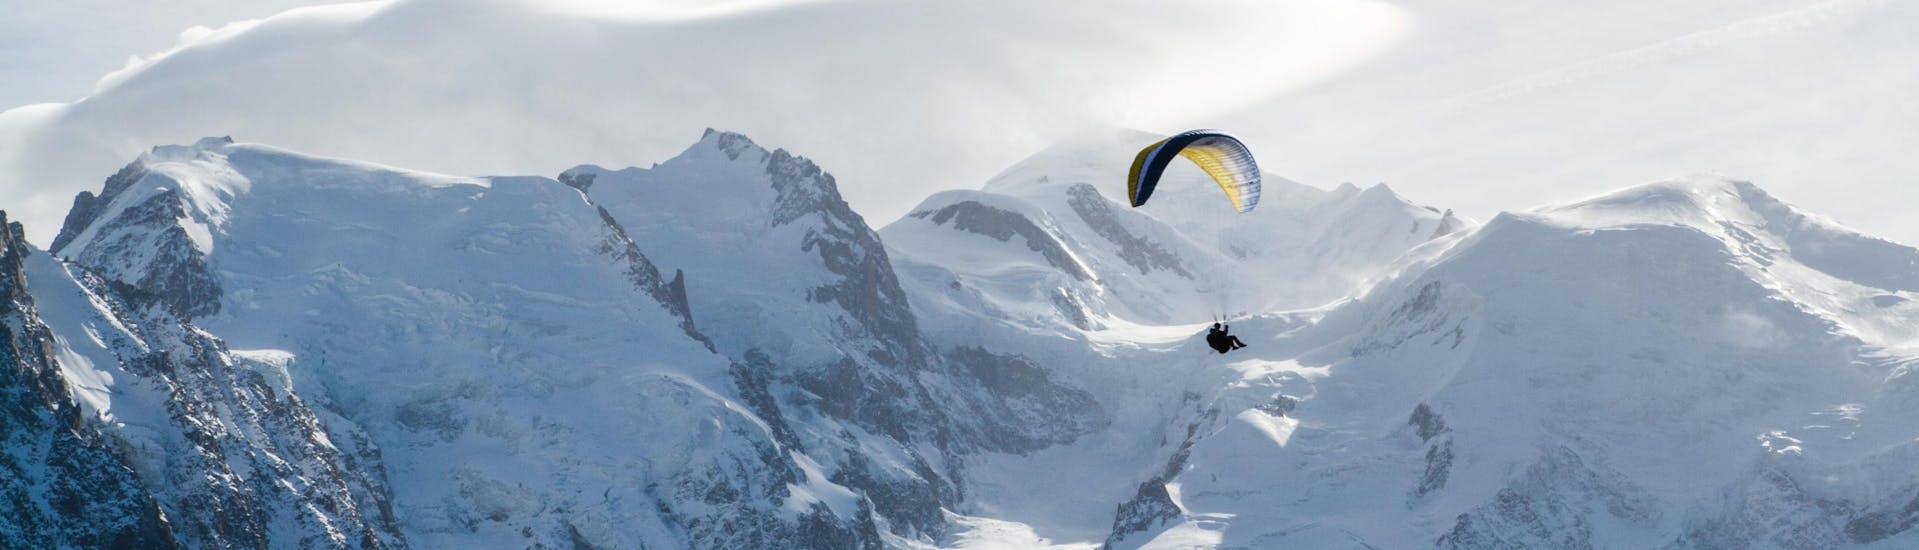 Une personne effectue un vol en parapente dans la vallée de Chamonix depuis le Plan de l'Aiguille avec en fond les montagnes enneigées.